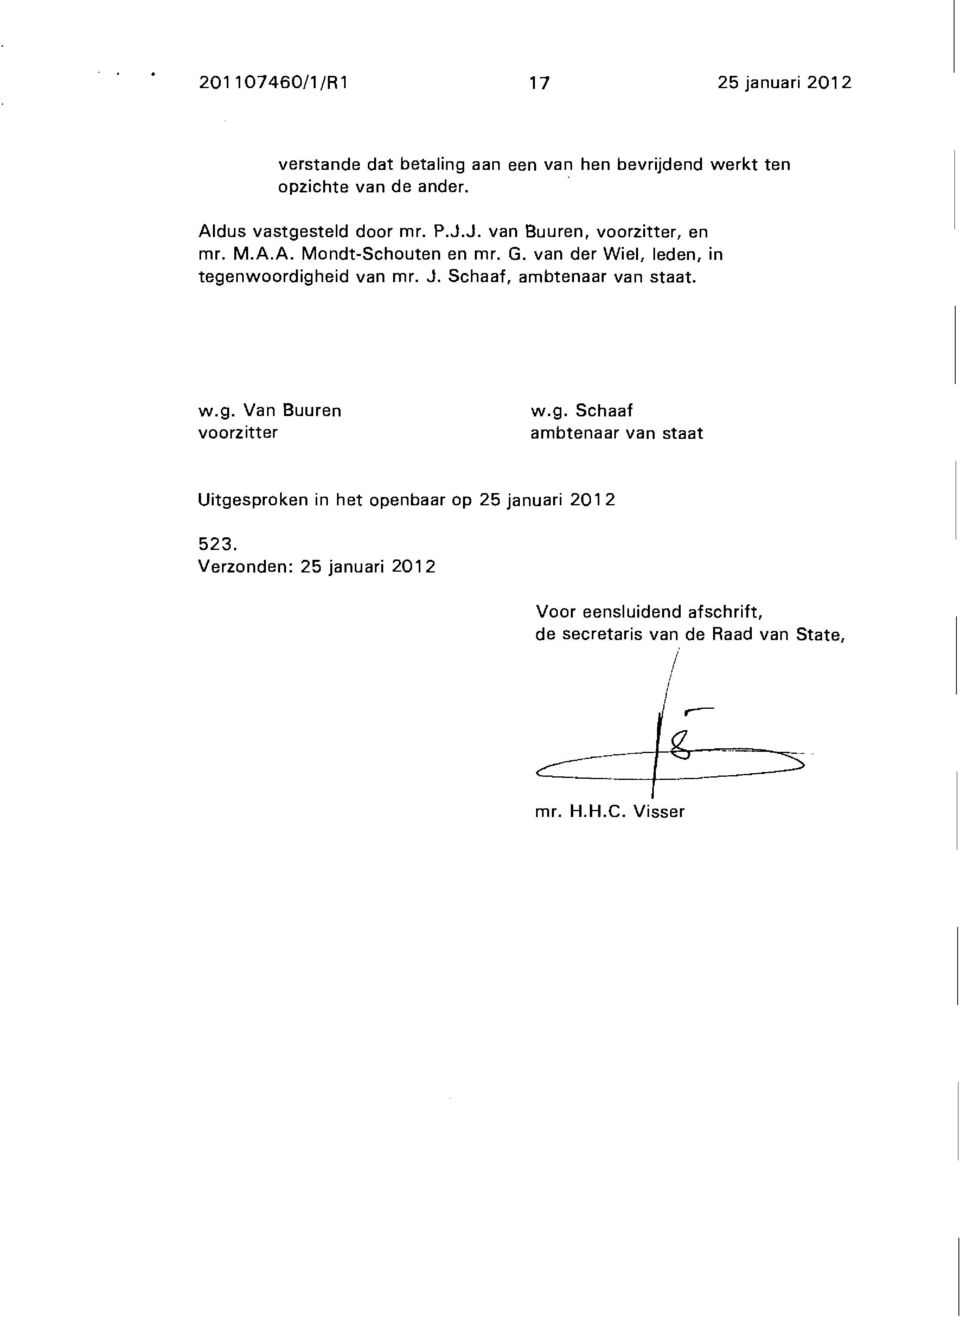 van der Wiel, leden, in tegenwoordigheid van mr. J. Schaaf, ambtenaar van staat. w.g. Van Buuren voorzitter w.g. Schaaf ambtenaar van staat Uitgesproken in het openbaar op 25 januari 2012 523.